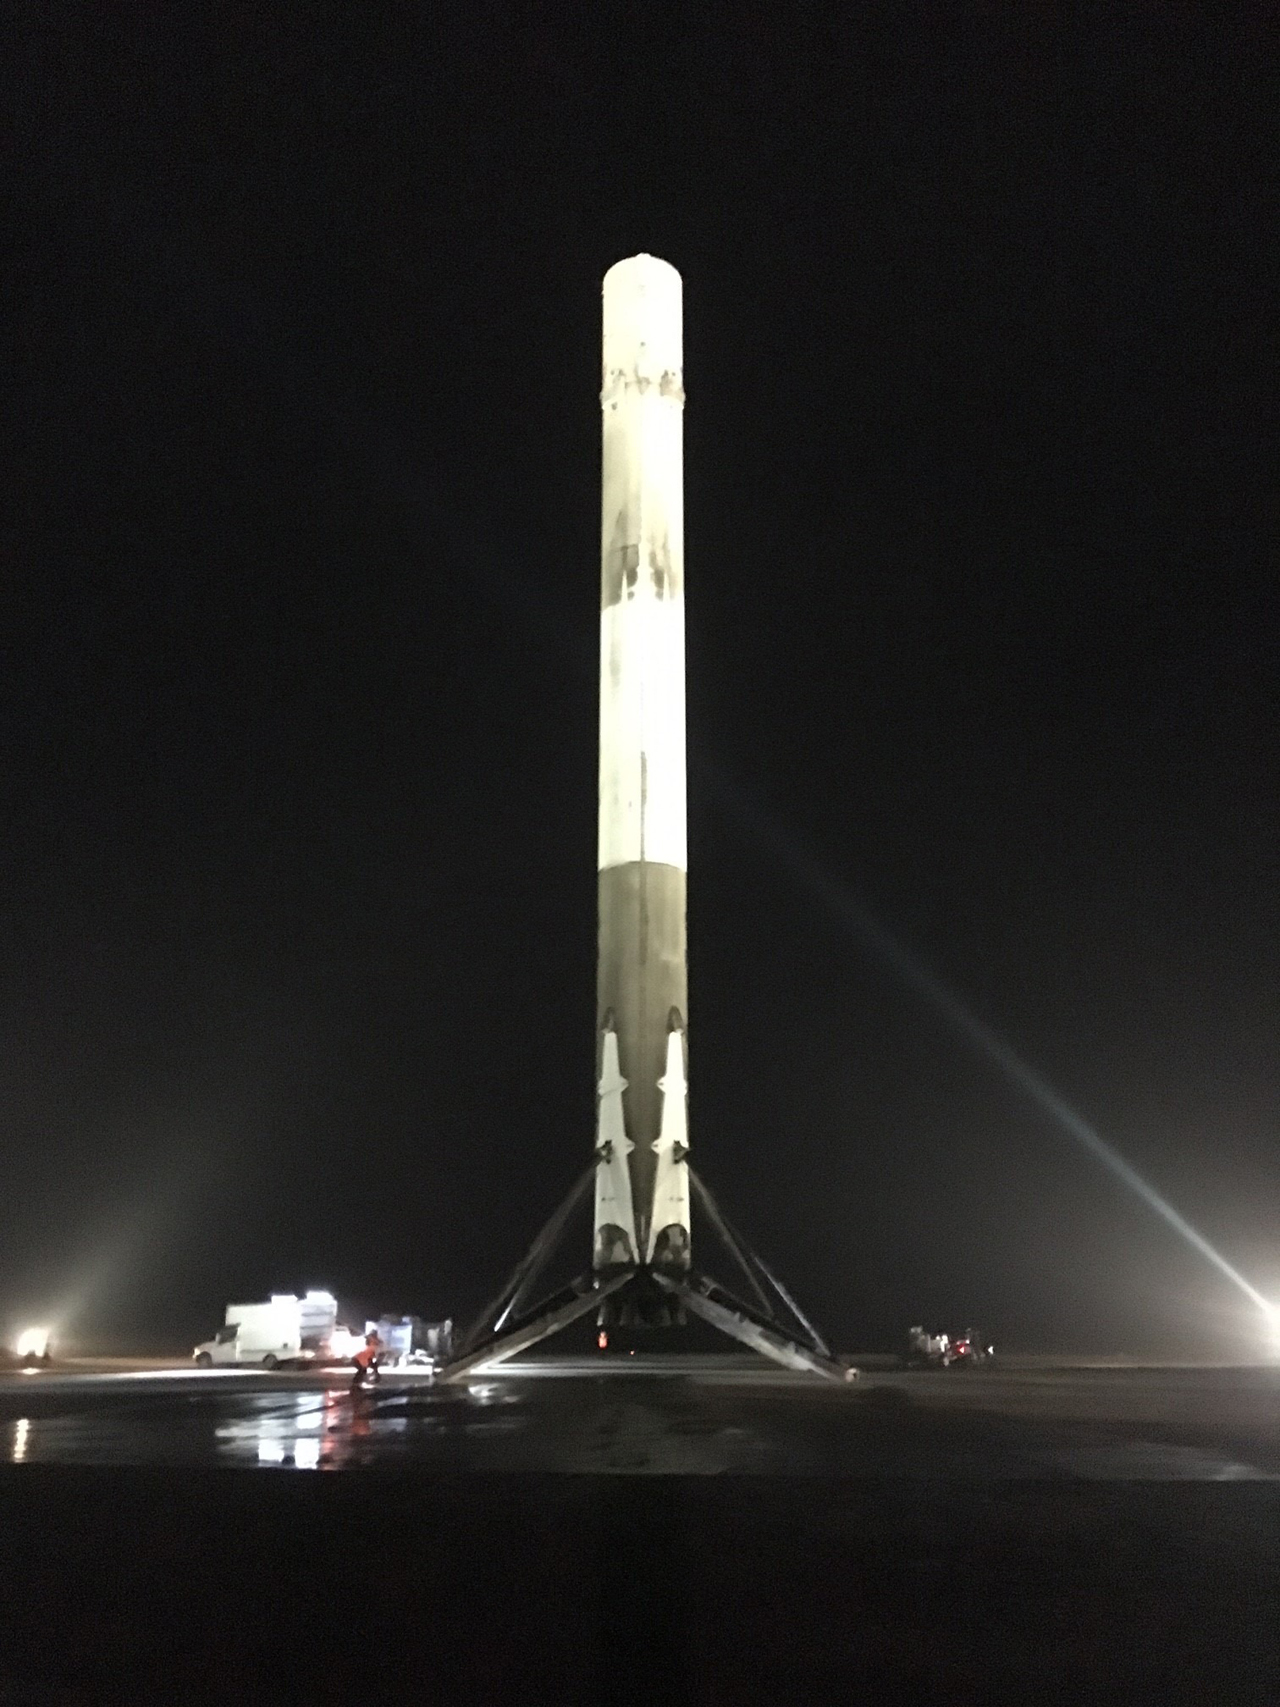 A képre kattintva galéria nyílik a fellövésről és a csodás, történelmi landolásról (fotó: a SpaceX Facebook-oldala)